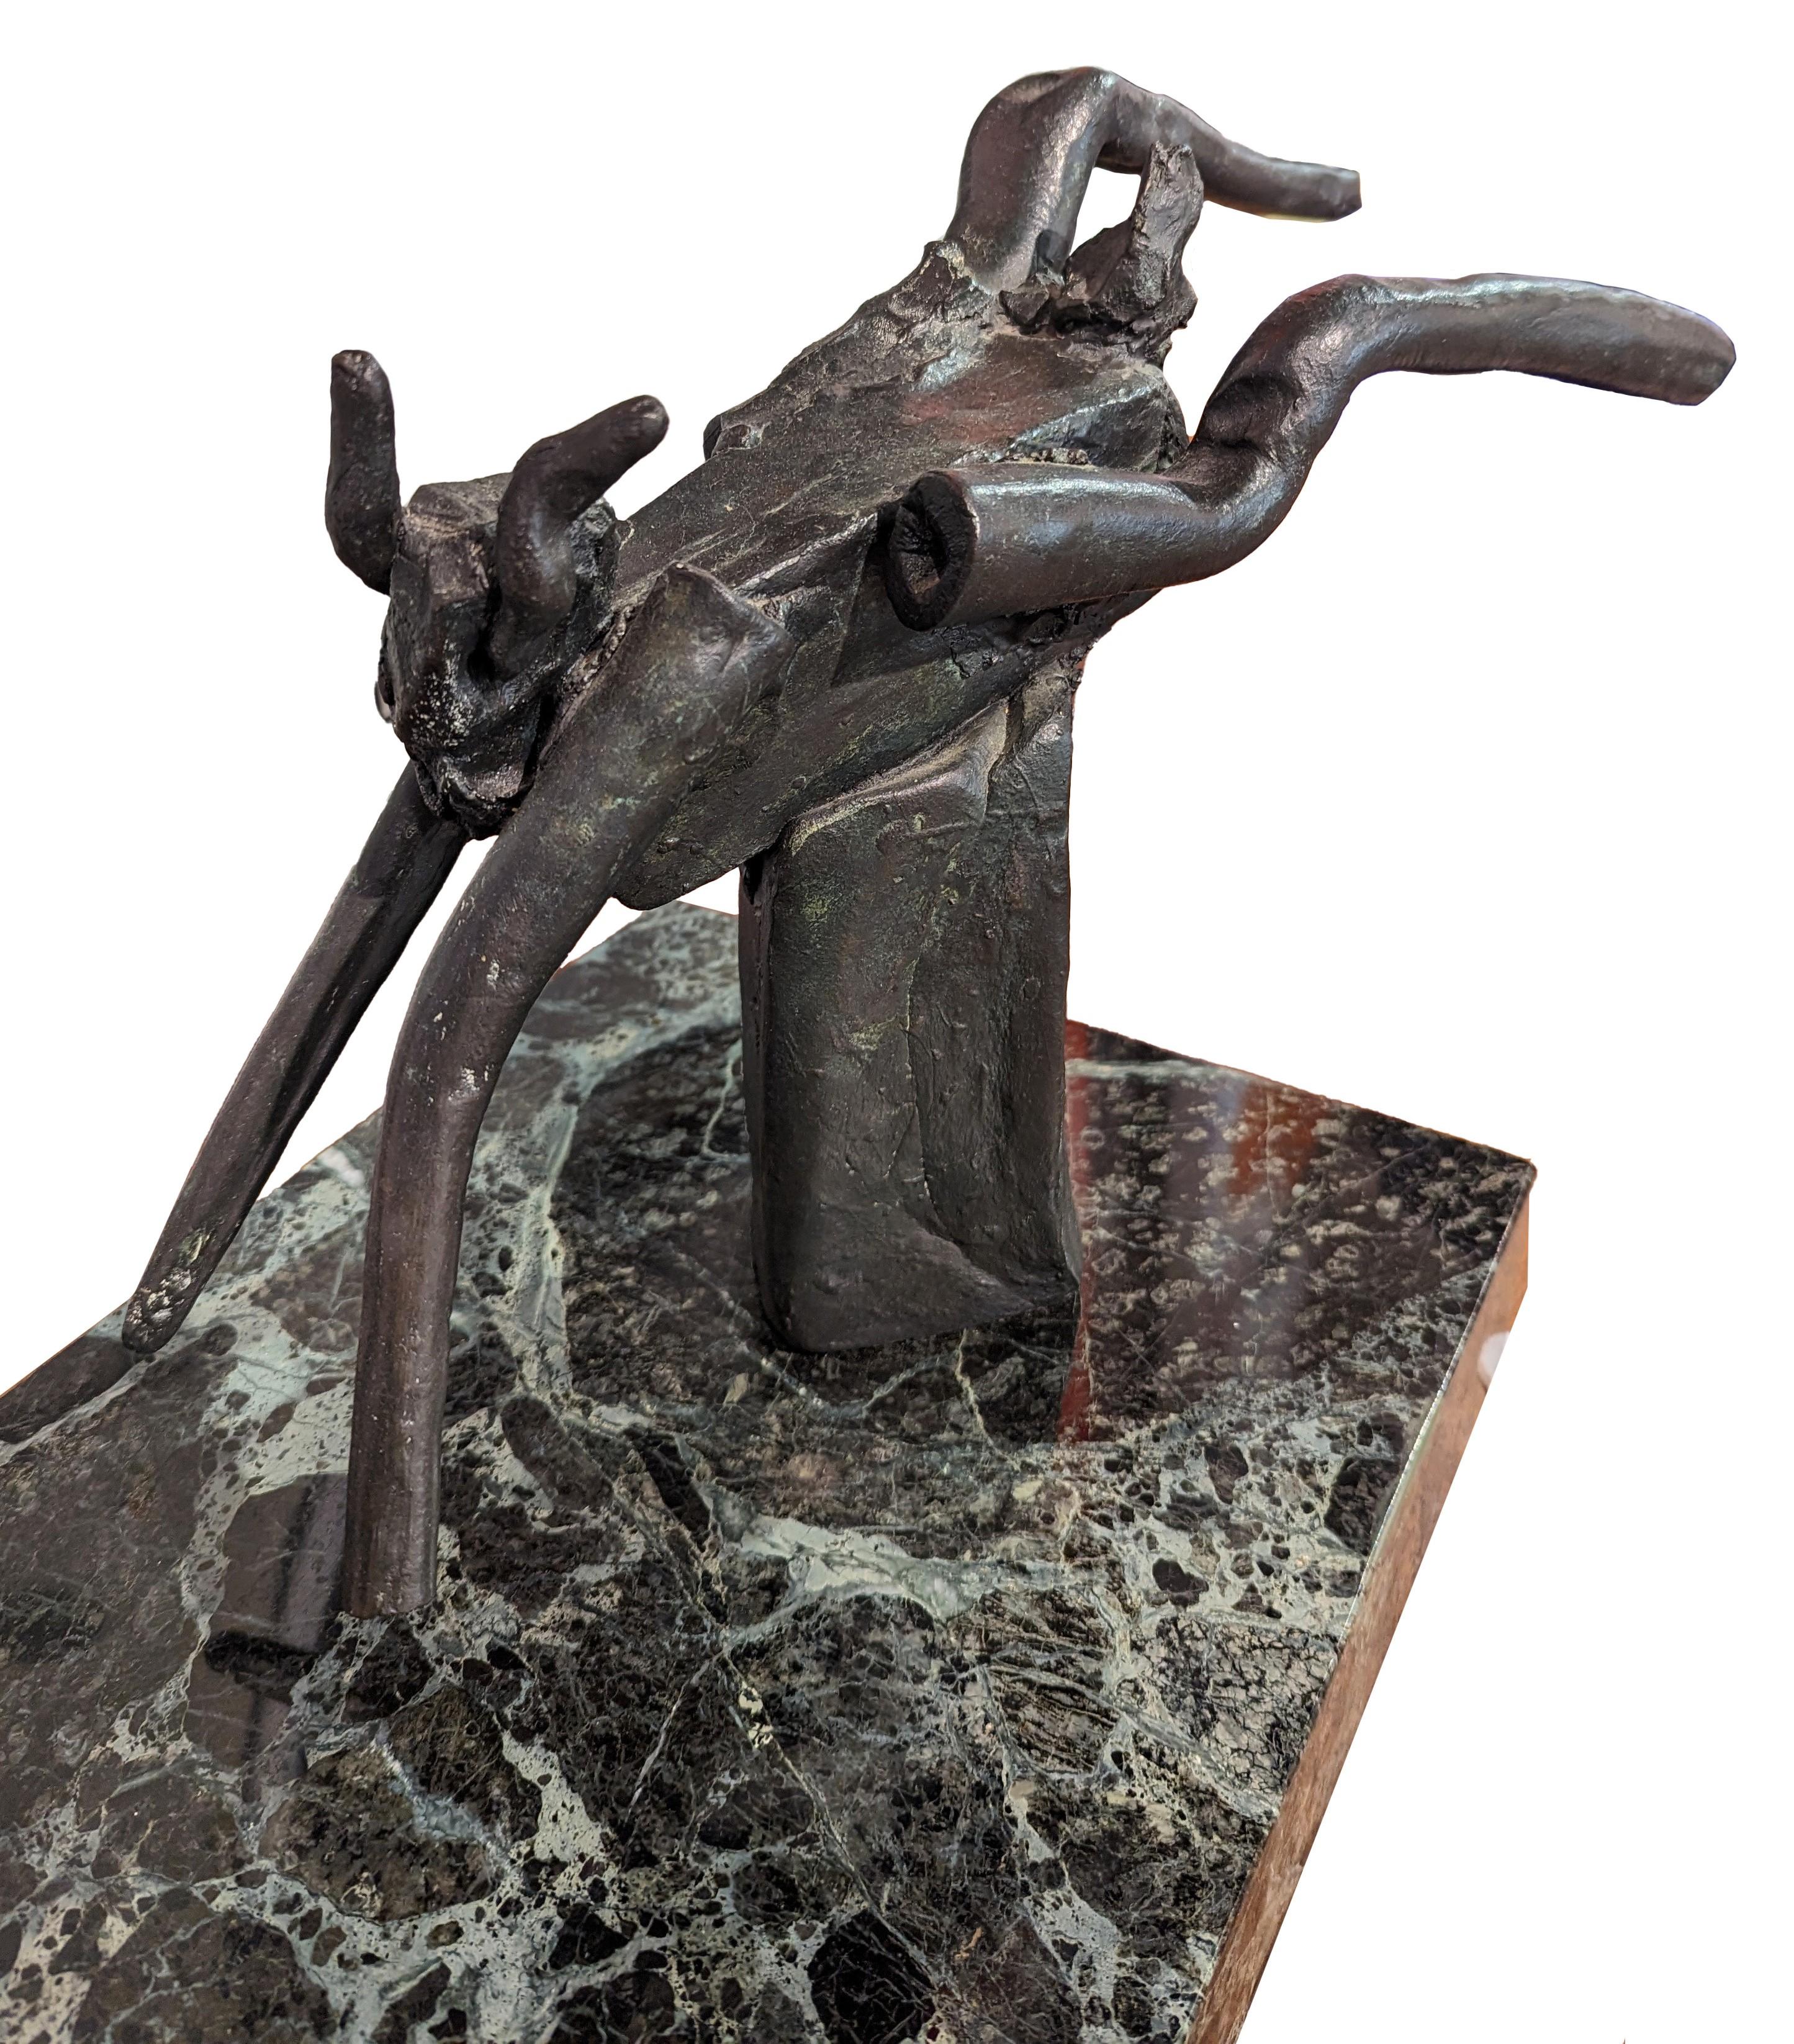 Moderne abstrakte Skulptur einer Frau und einer Ziege des bekannten Künstlers Reuben Nakian. Das Werk zeigt eine weibliche Nymphenfigur, die sich zurücklehnt, während sich eine Ziegenfigur in Nakians ikonischem, blockhaften Stil nähert. Die